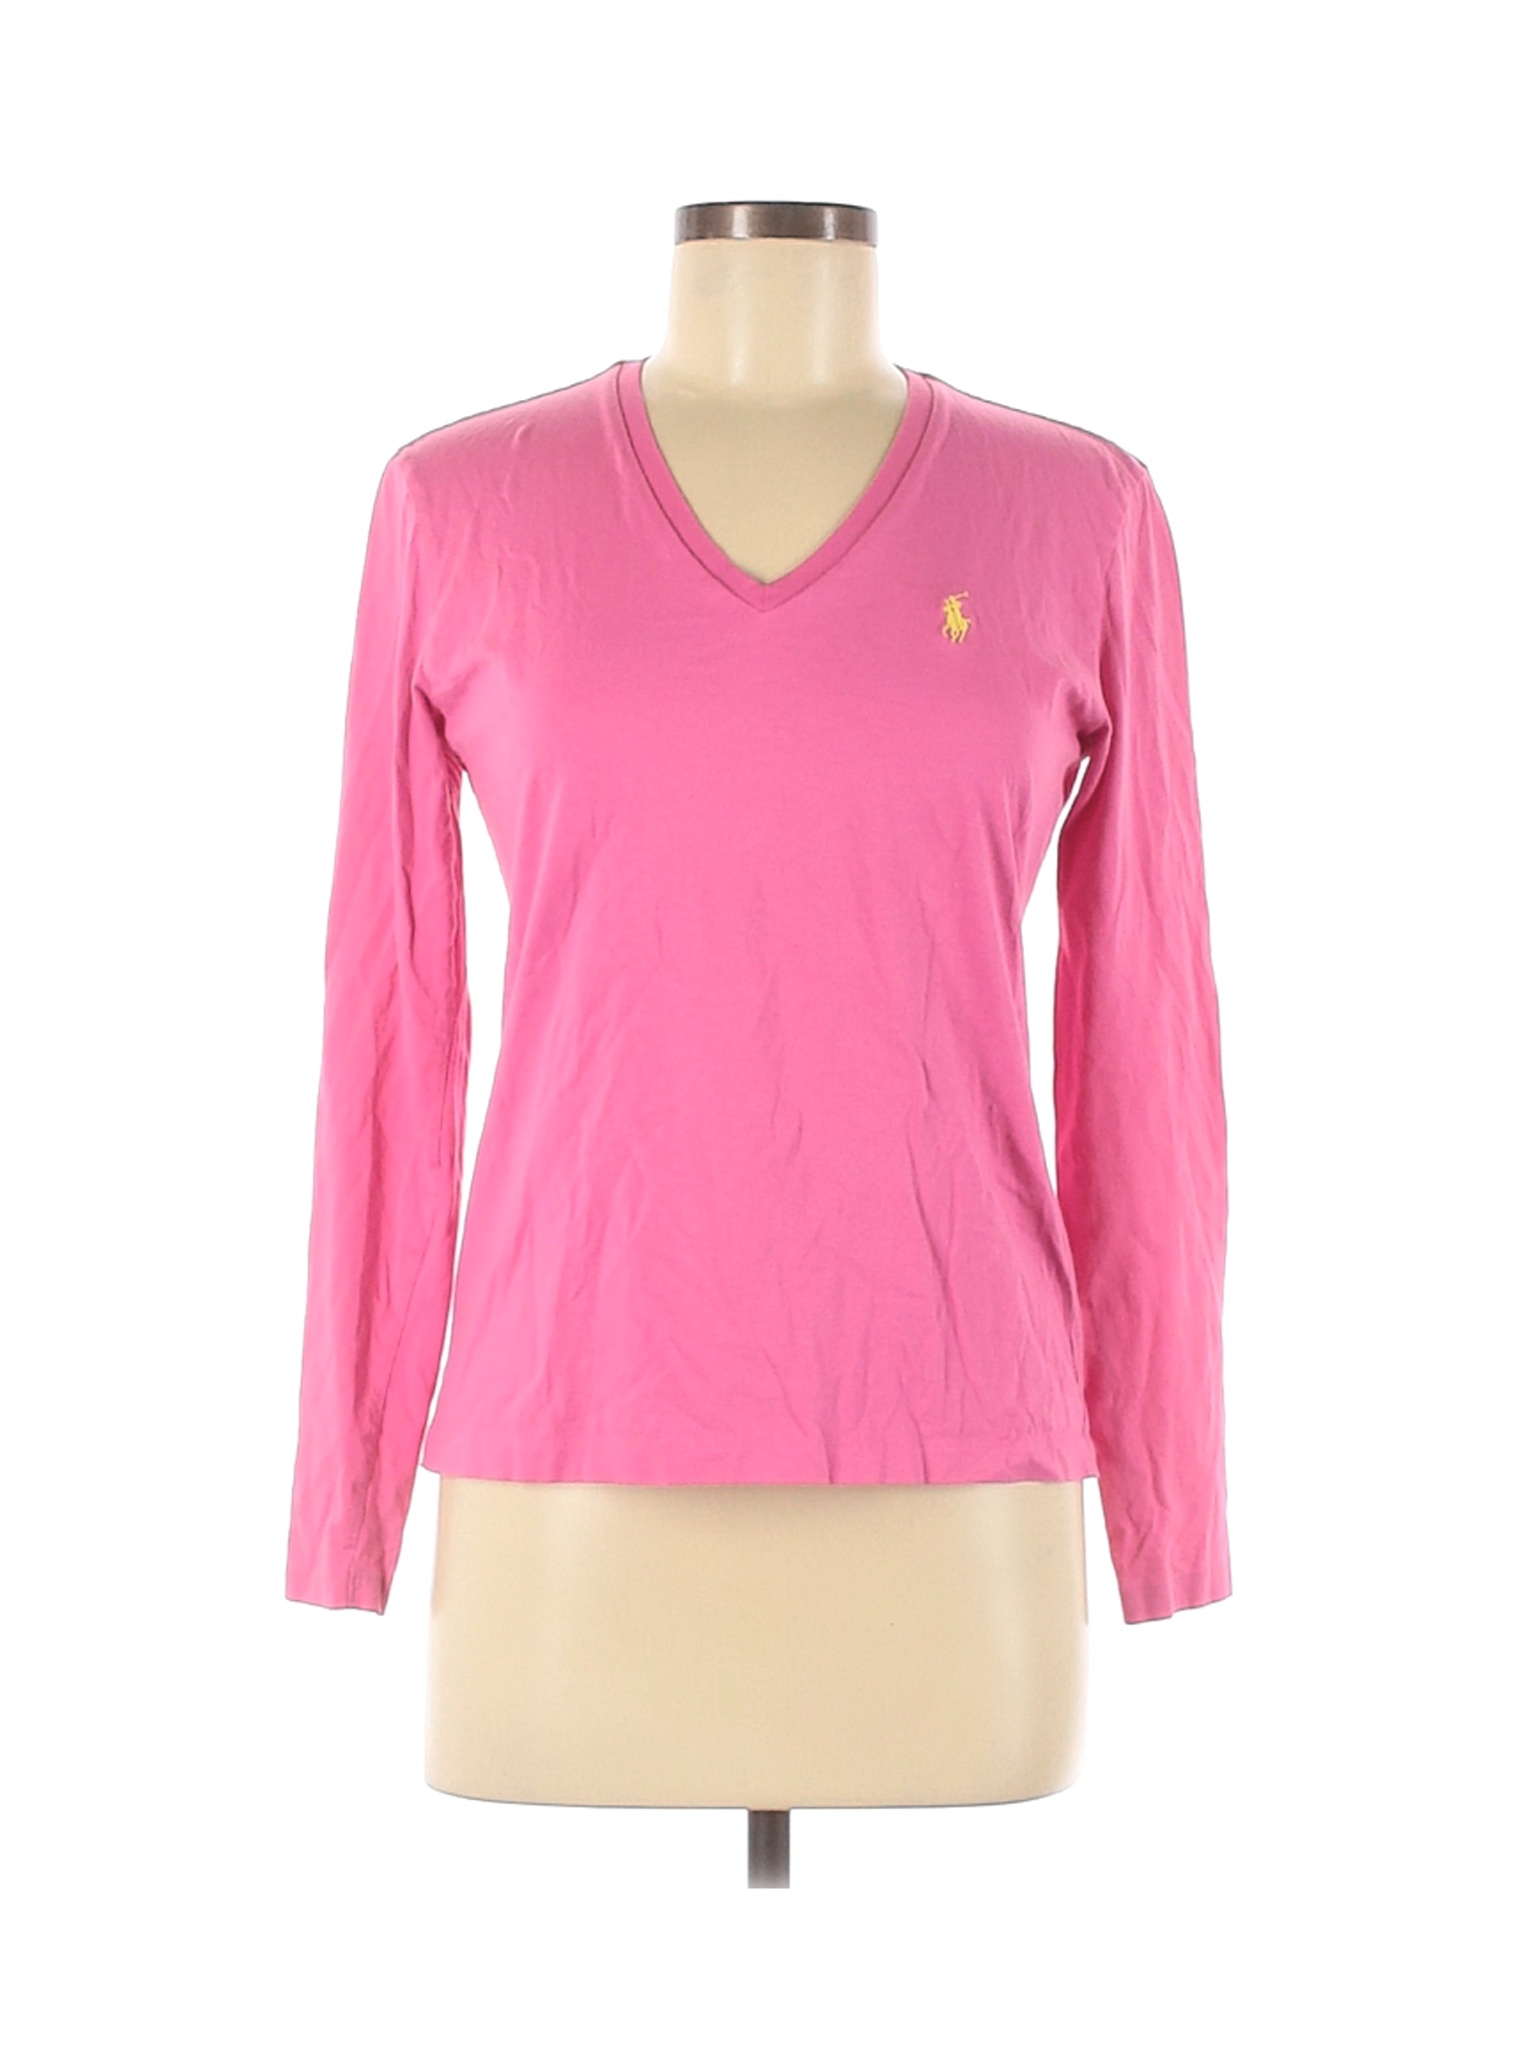 Ralph Lauren Sport Women Pink Long Sleeve T-Shirt M | eBay